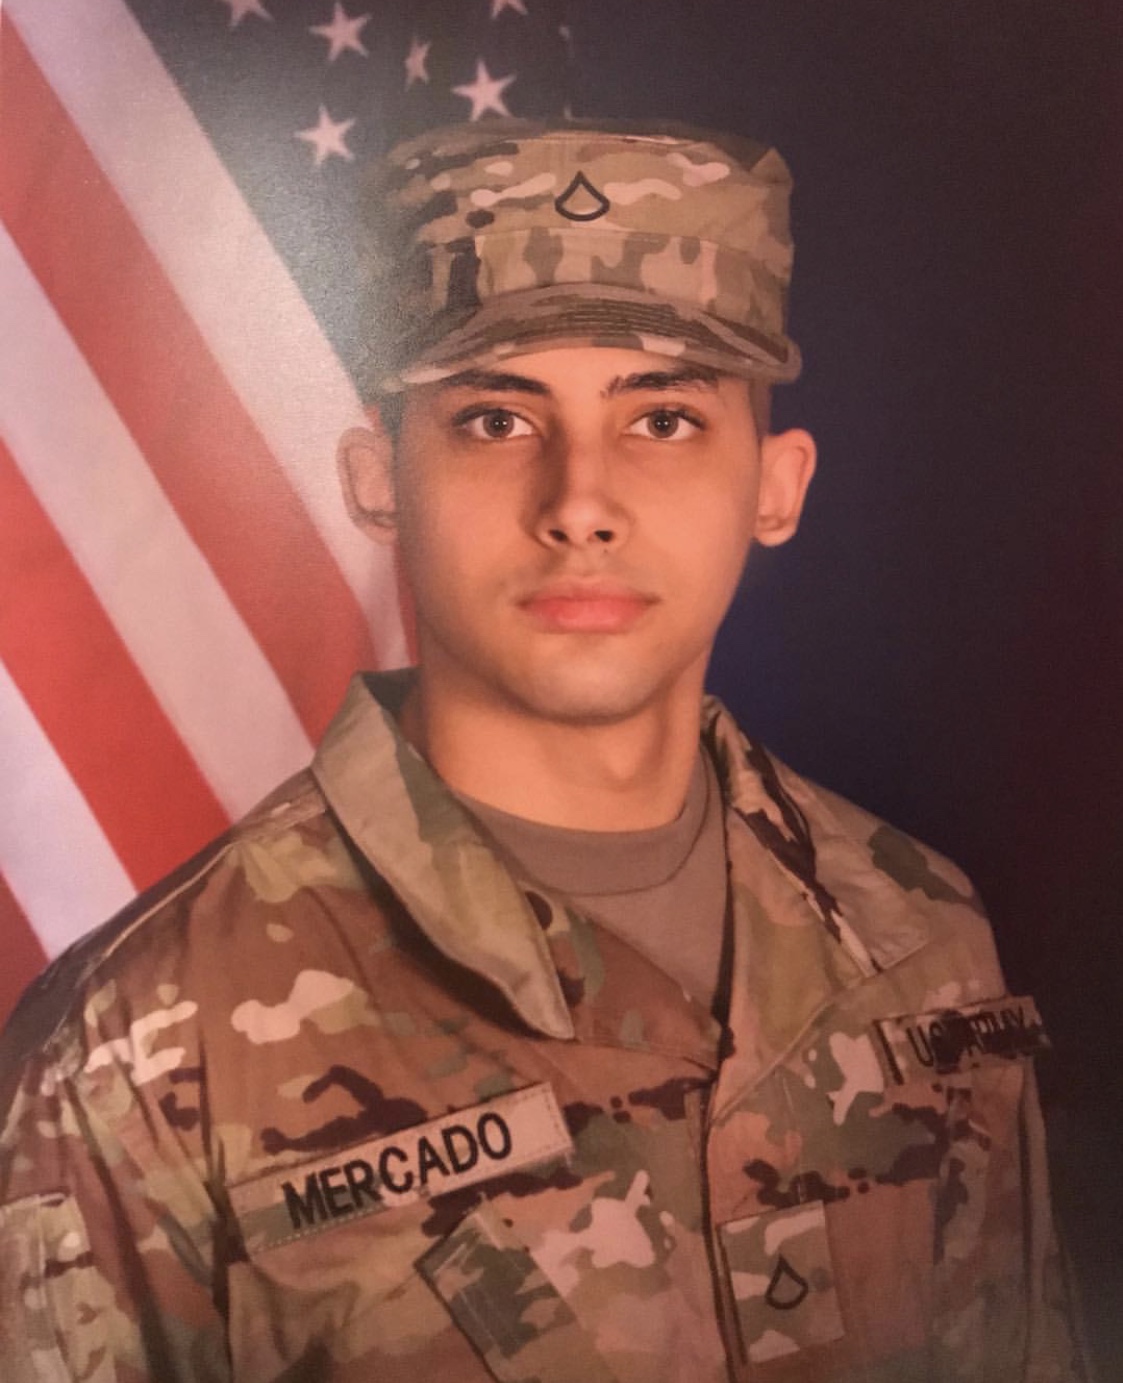 Kevin Mercado in Army uniform